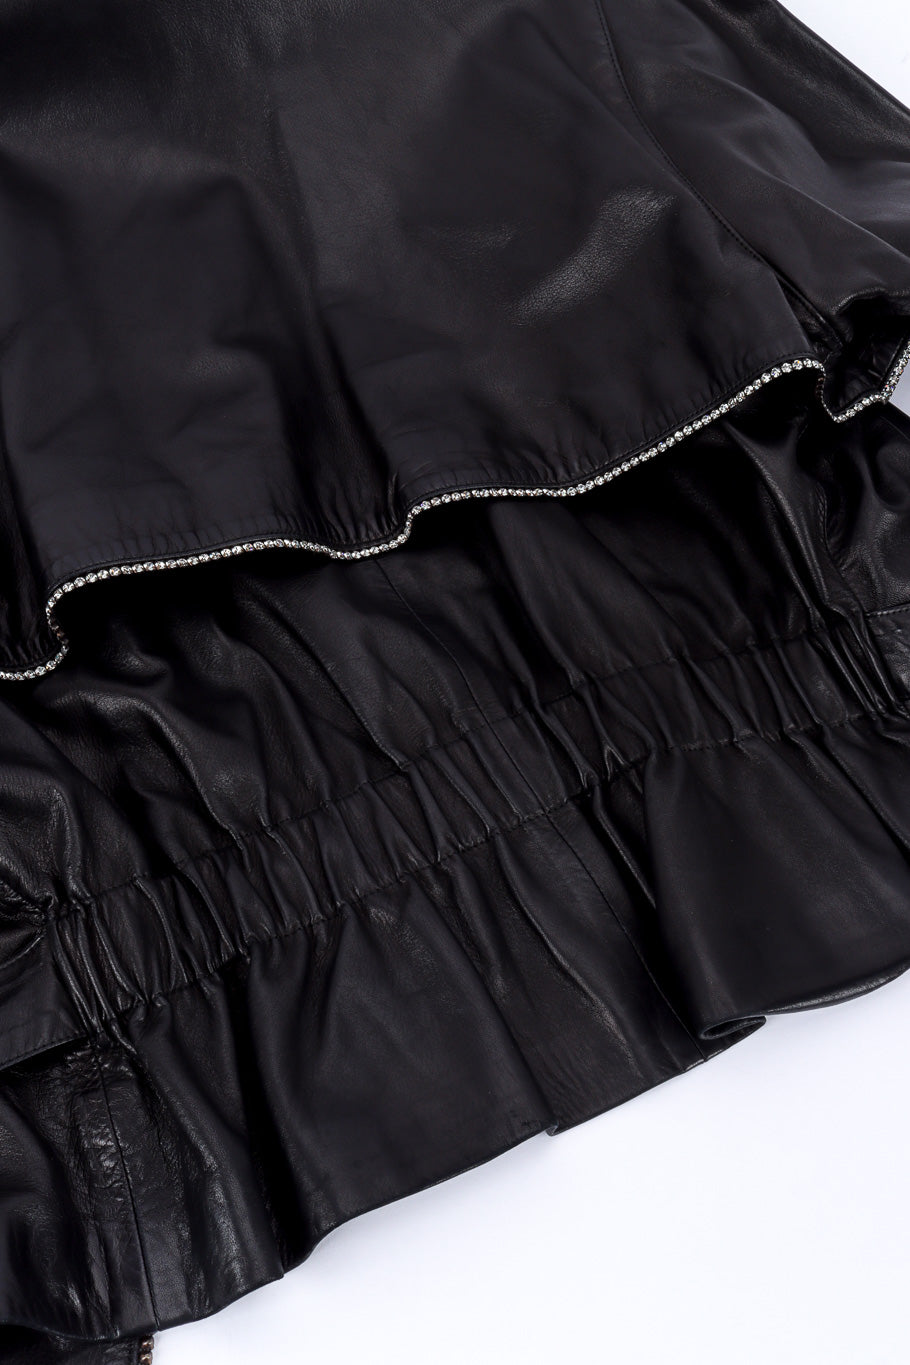 Vintage Charles Jourdan Leather Rhinestone Jacket elastic waist @recessla